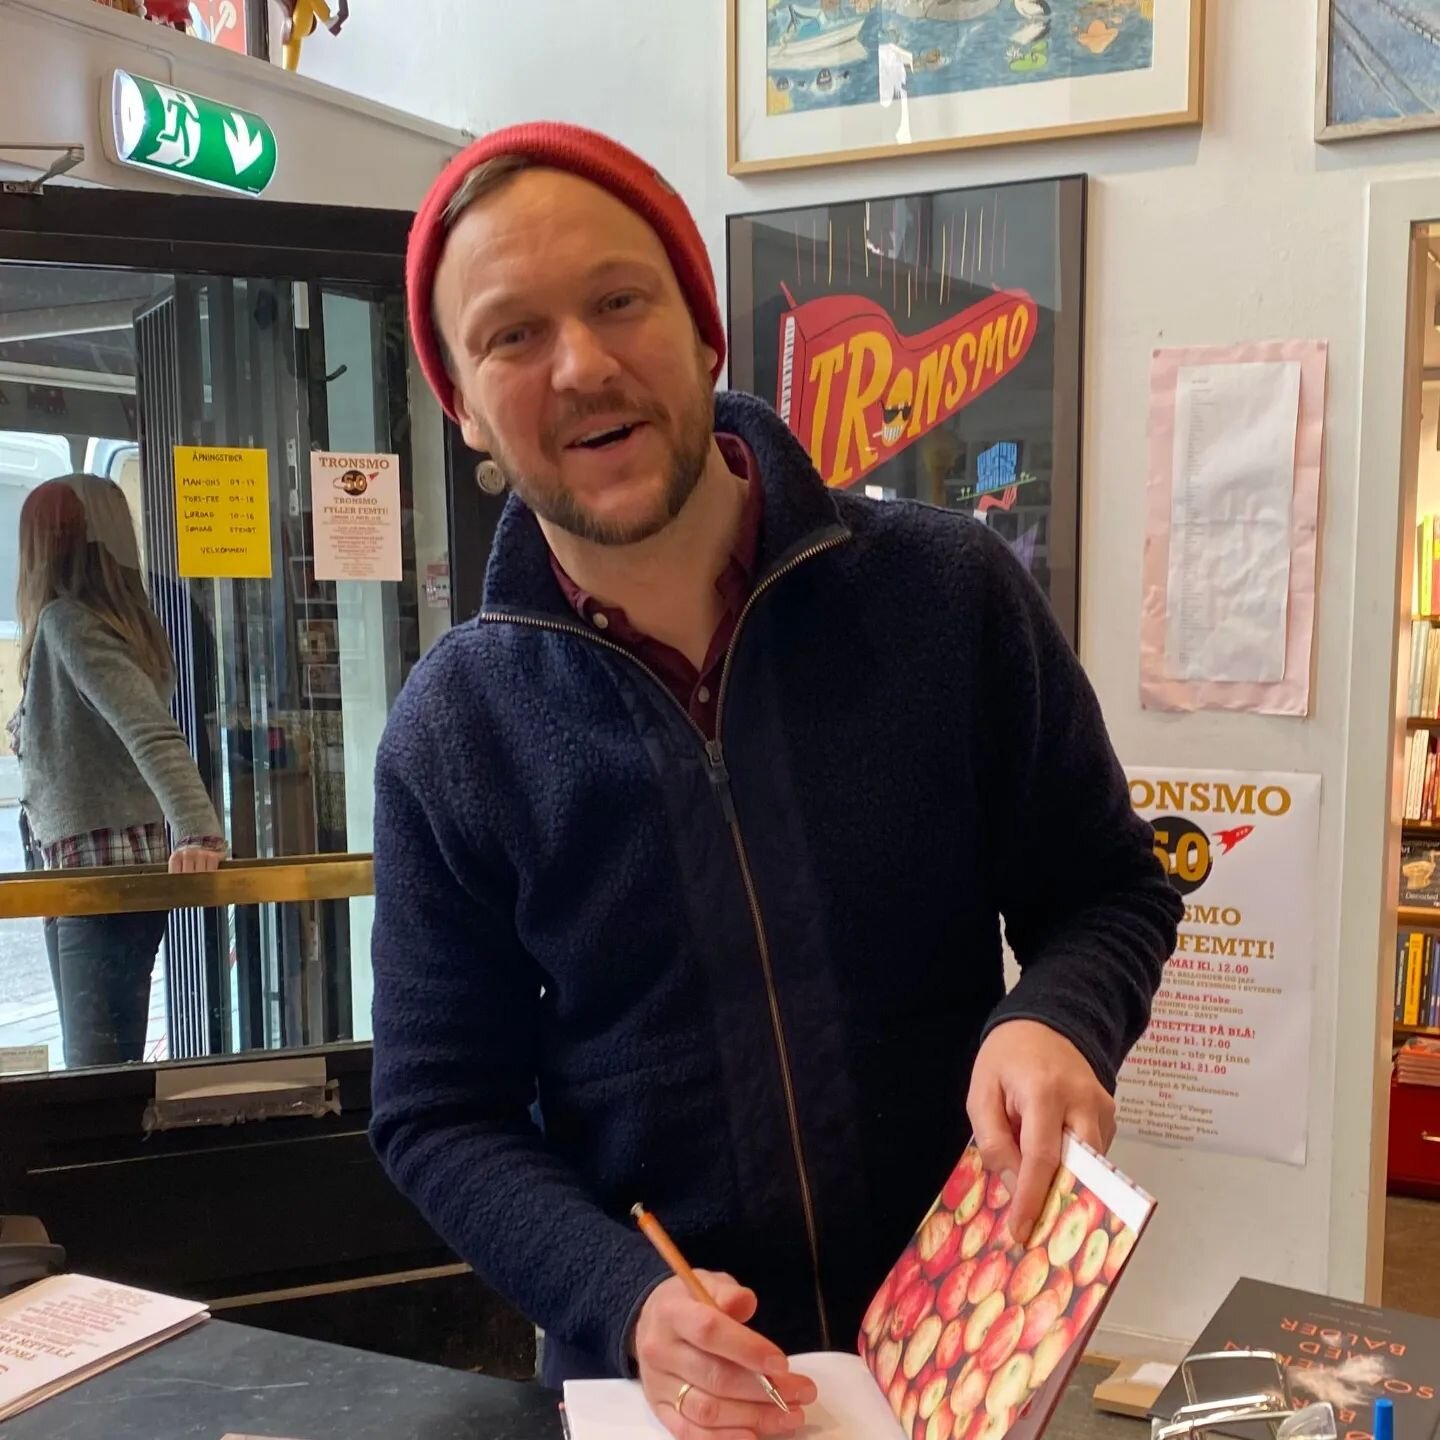 St&oslash;tt en lokal butikk!
Det er de som gj&oslash;r byene og tettstedene i Norge spennende og verdt &aring; bo i ❤️

N&aring; kan du f&aring; kj&oslash;pt signert utgave av  Den store norske siderguiden p&aring; Oslos beste bokbutikk @tronsmobok 